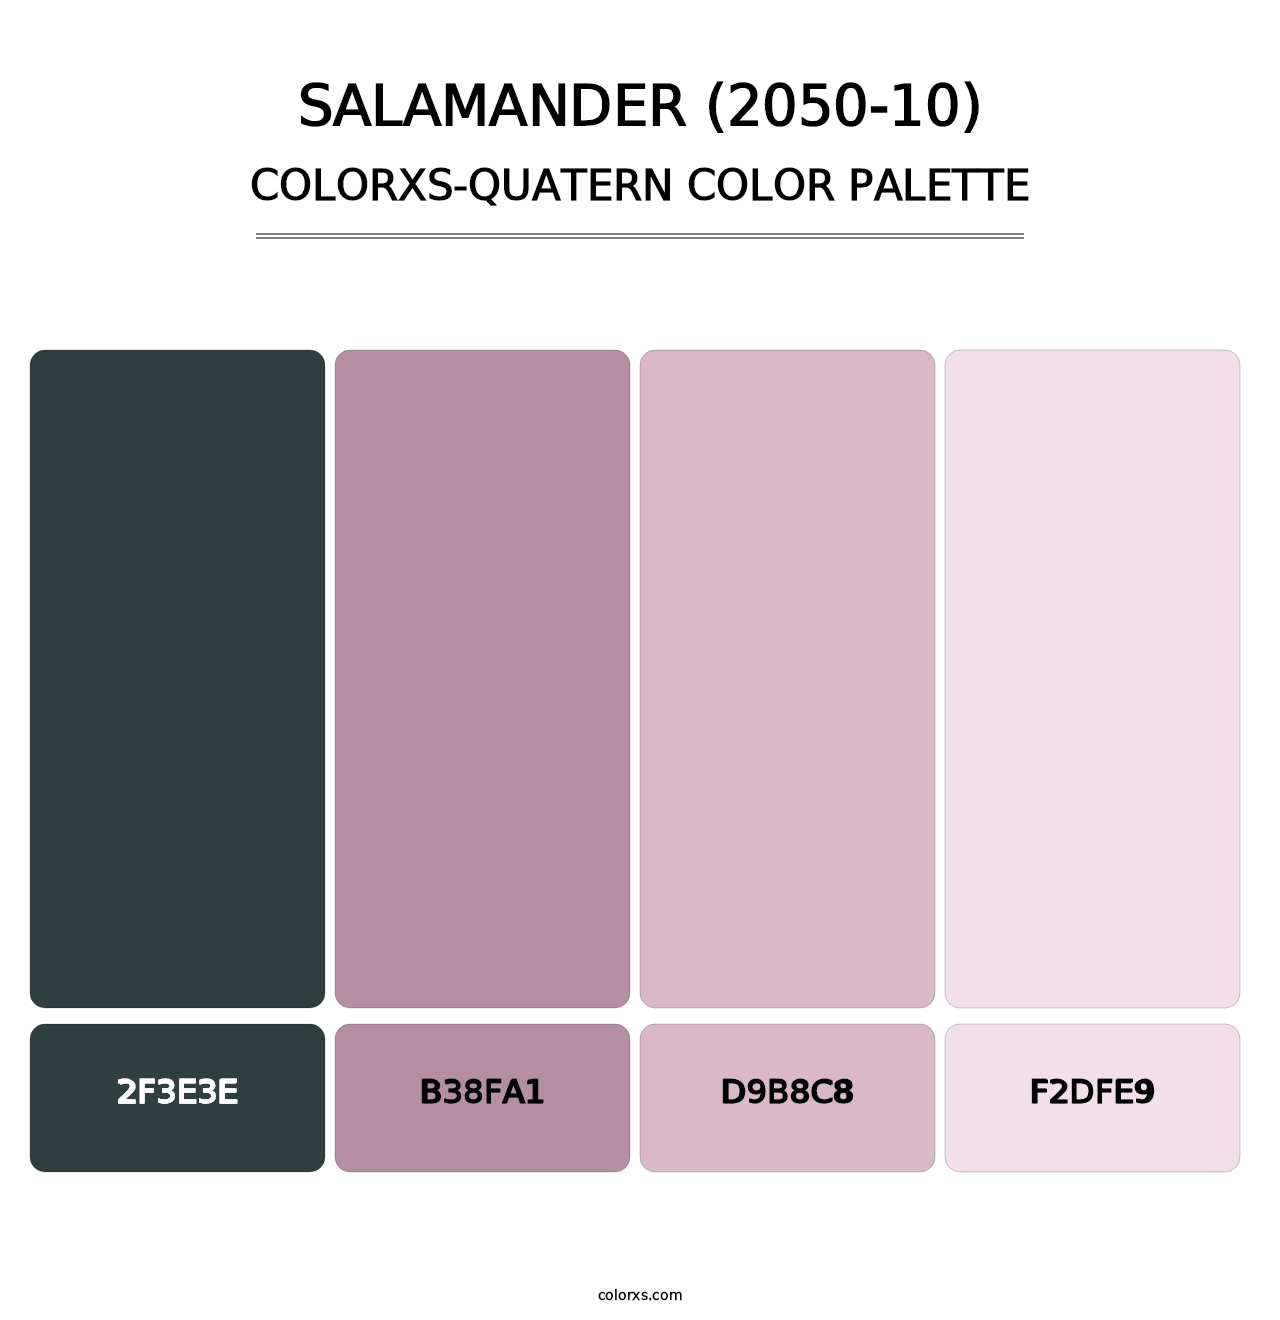 Salamander (2050-10) - Colorxs Quatern Palette